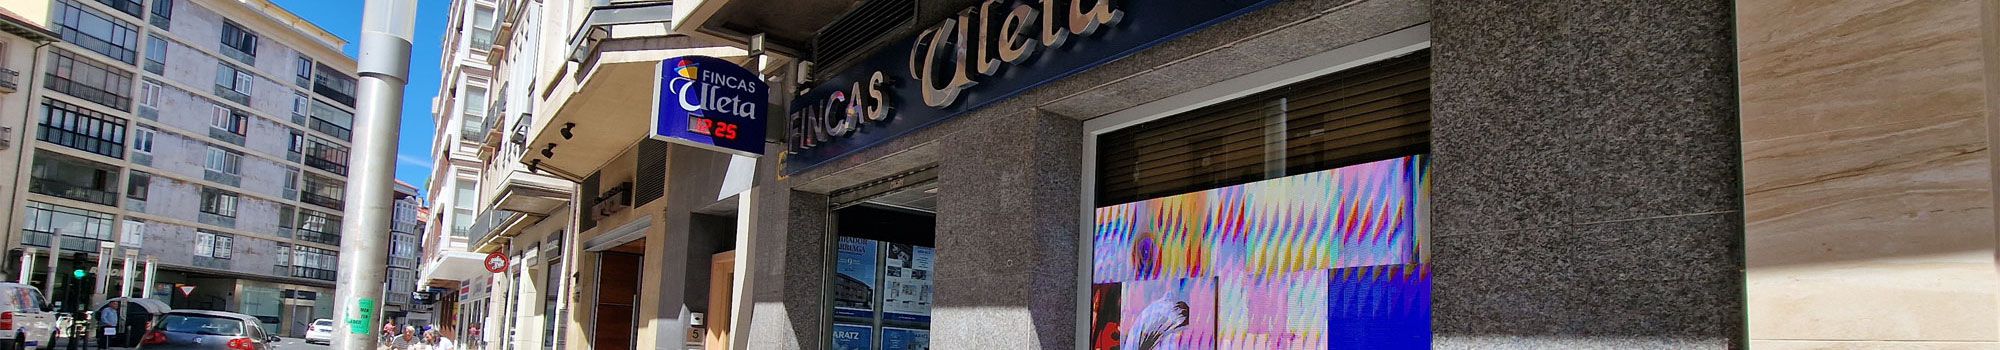 Amplia oferta de locales y oficinas en Vitoria-Gasteiz. Fincas Uleta en Vitoria-Gasteiz